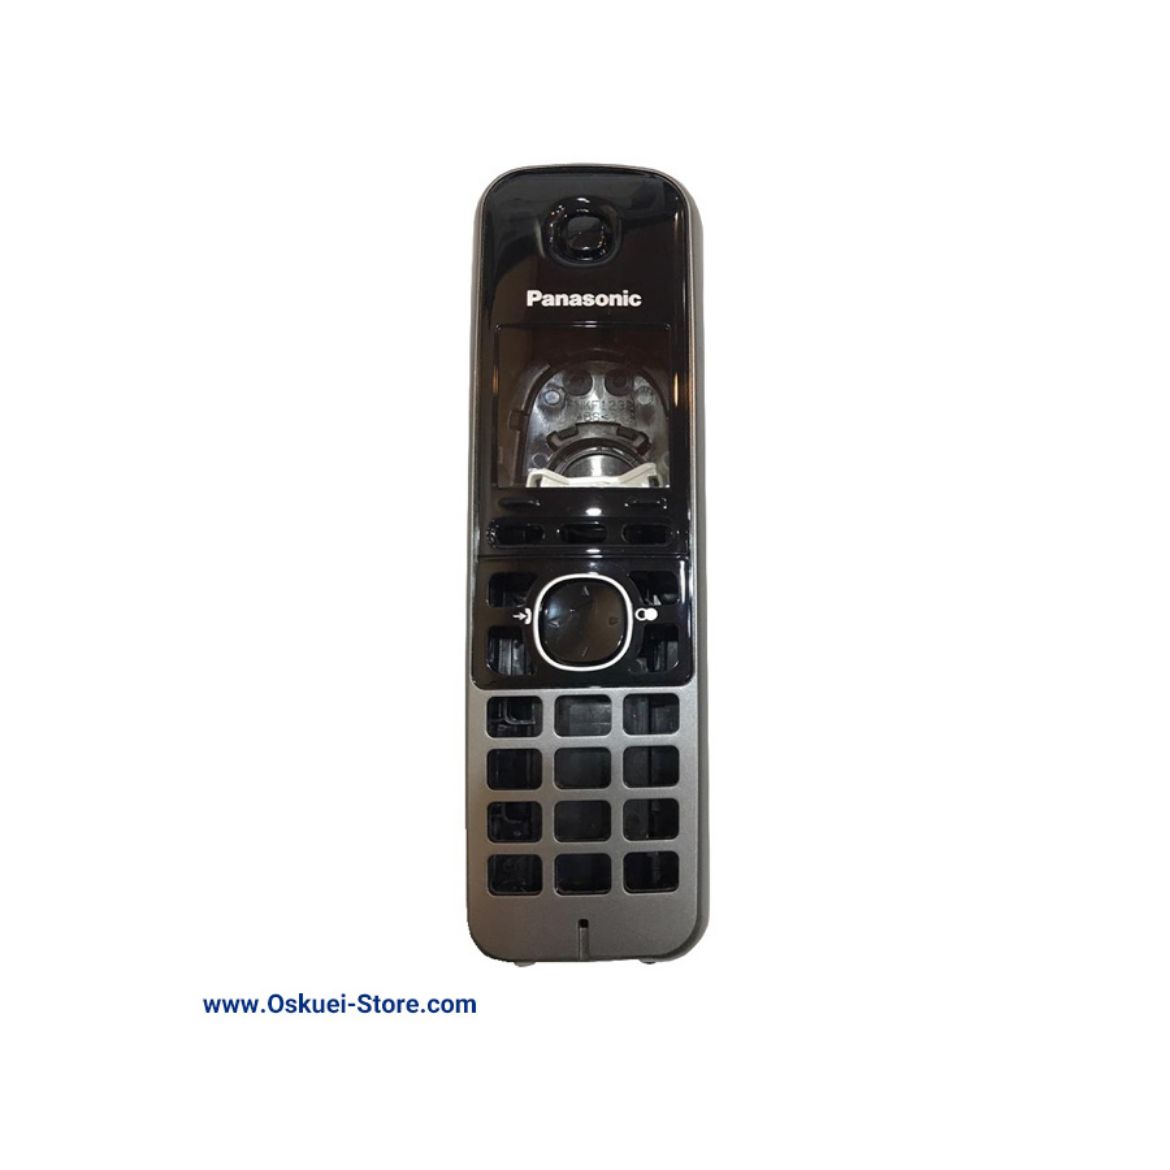 Panasonic cover KX-TGA671 Cordless Telephone